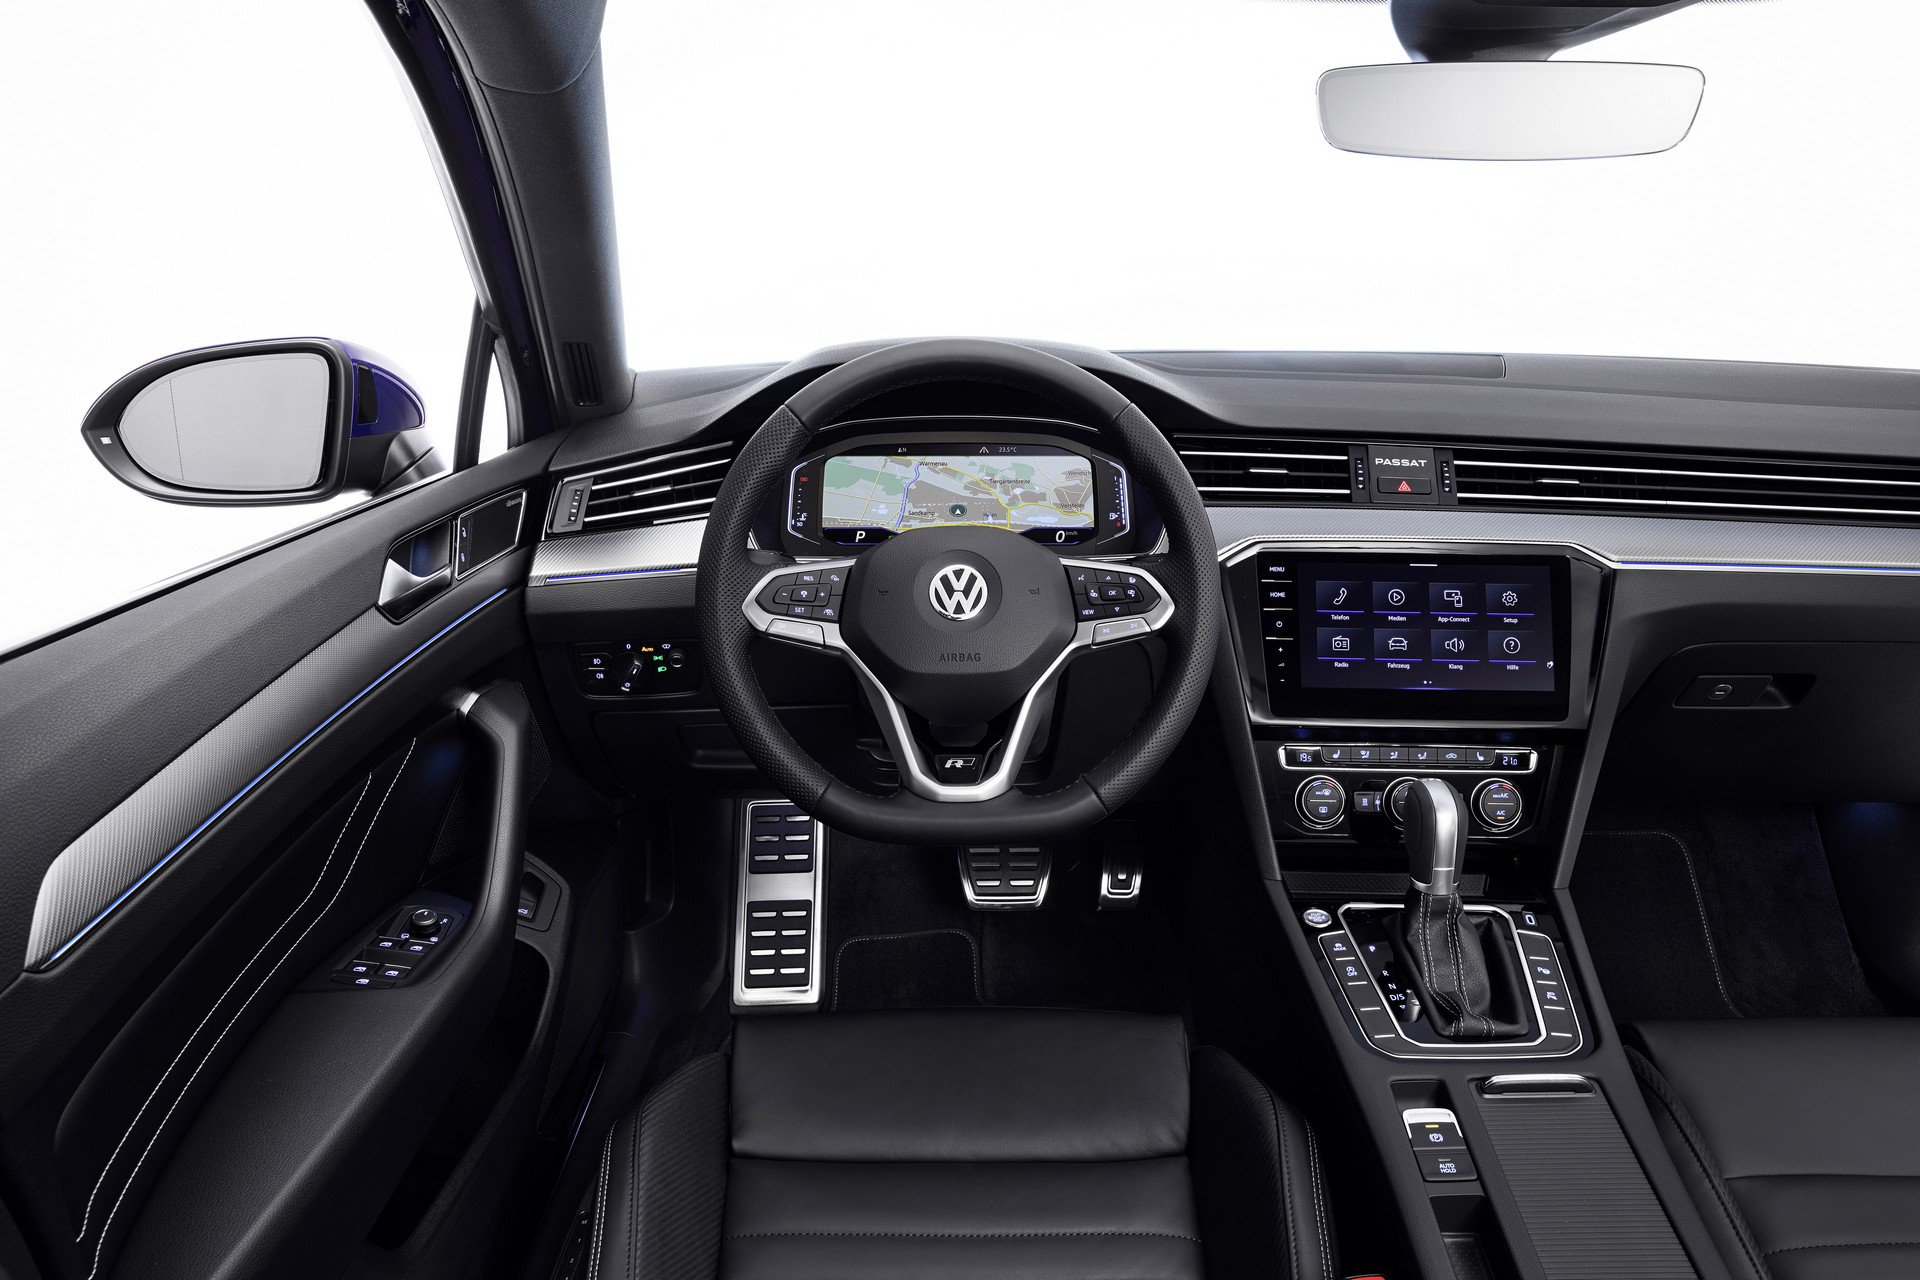 Volkswagen Passat interior Images